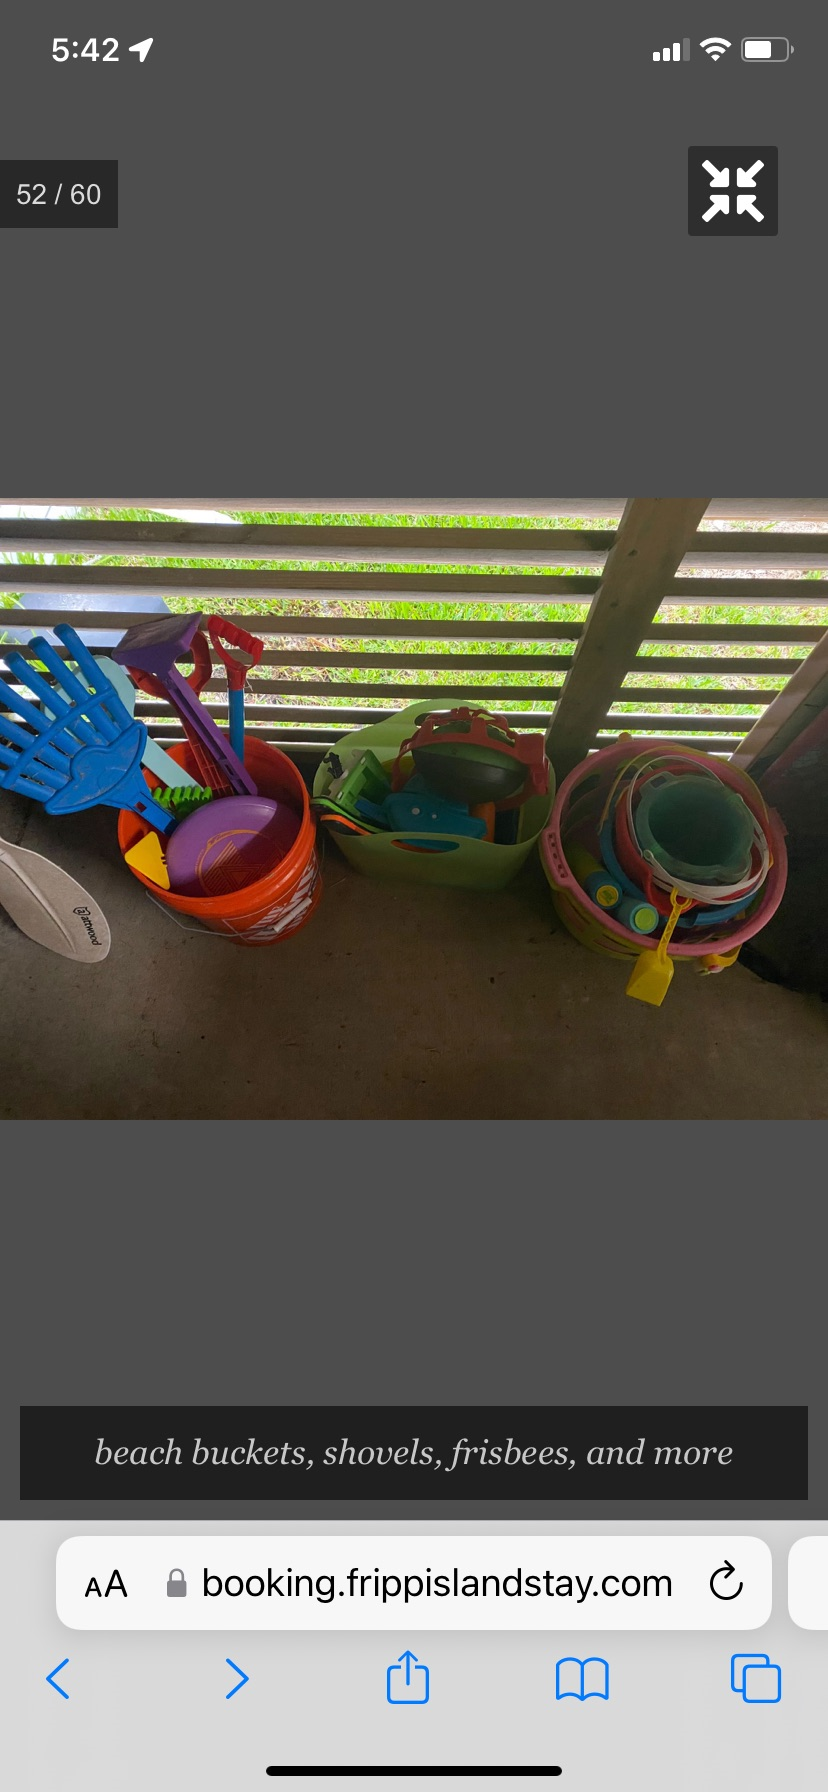 Beach buckets and toys